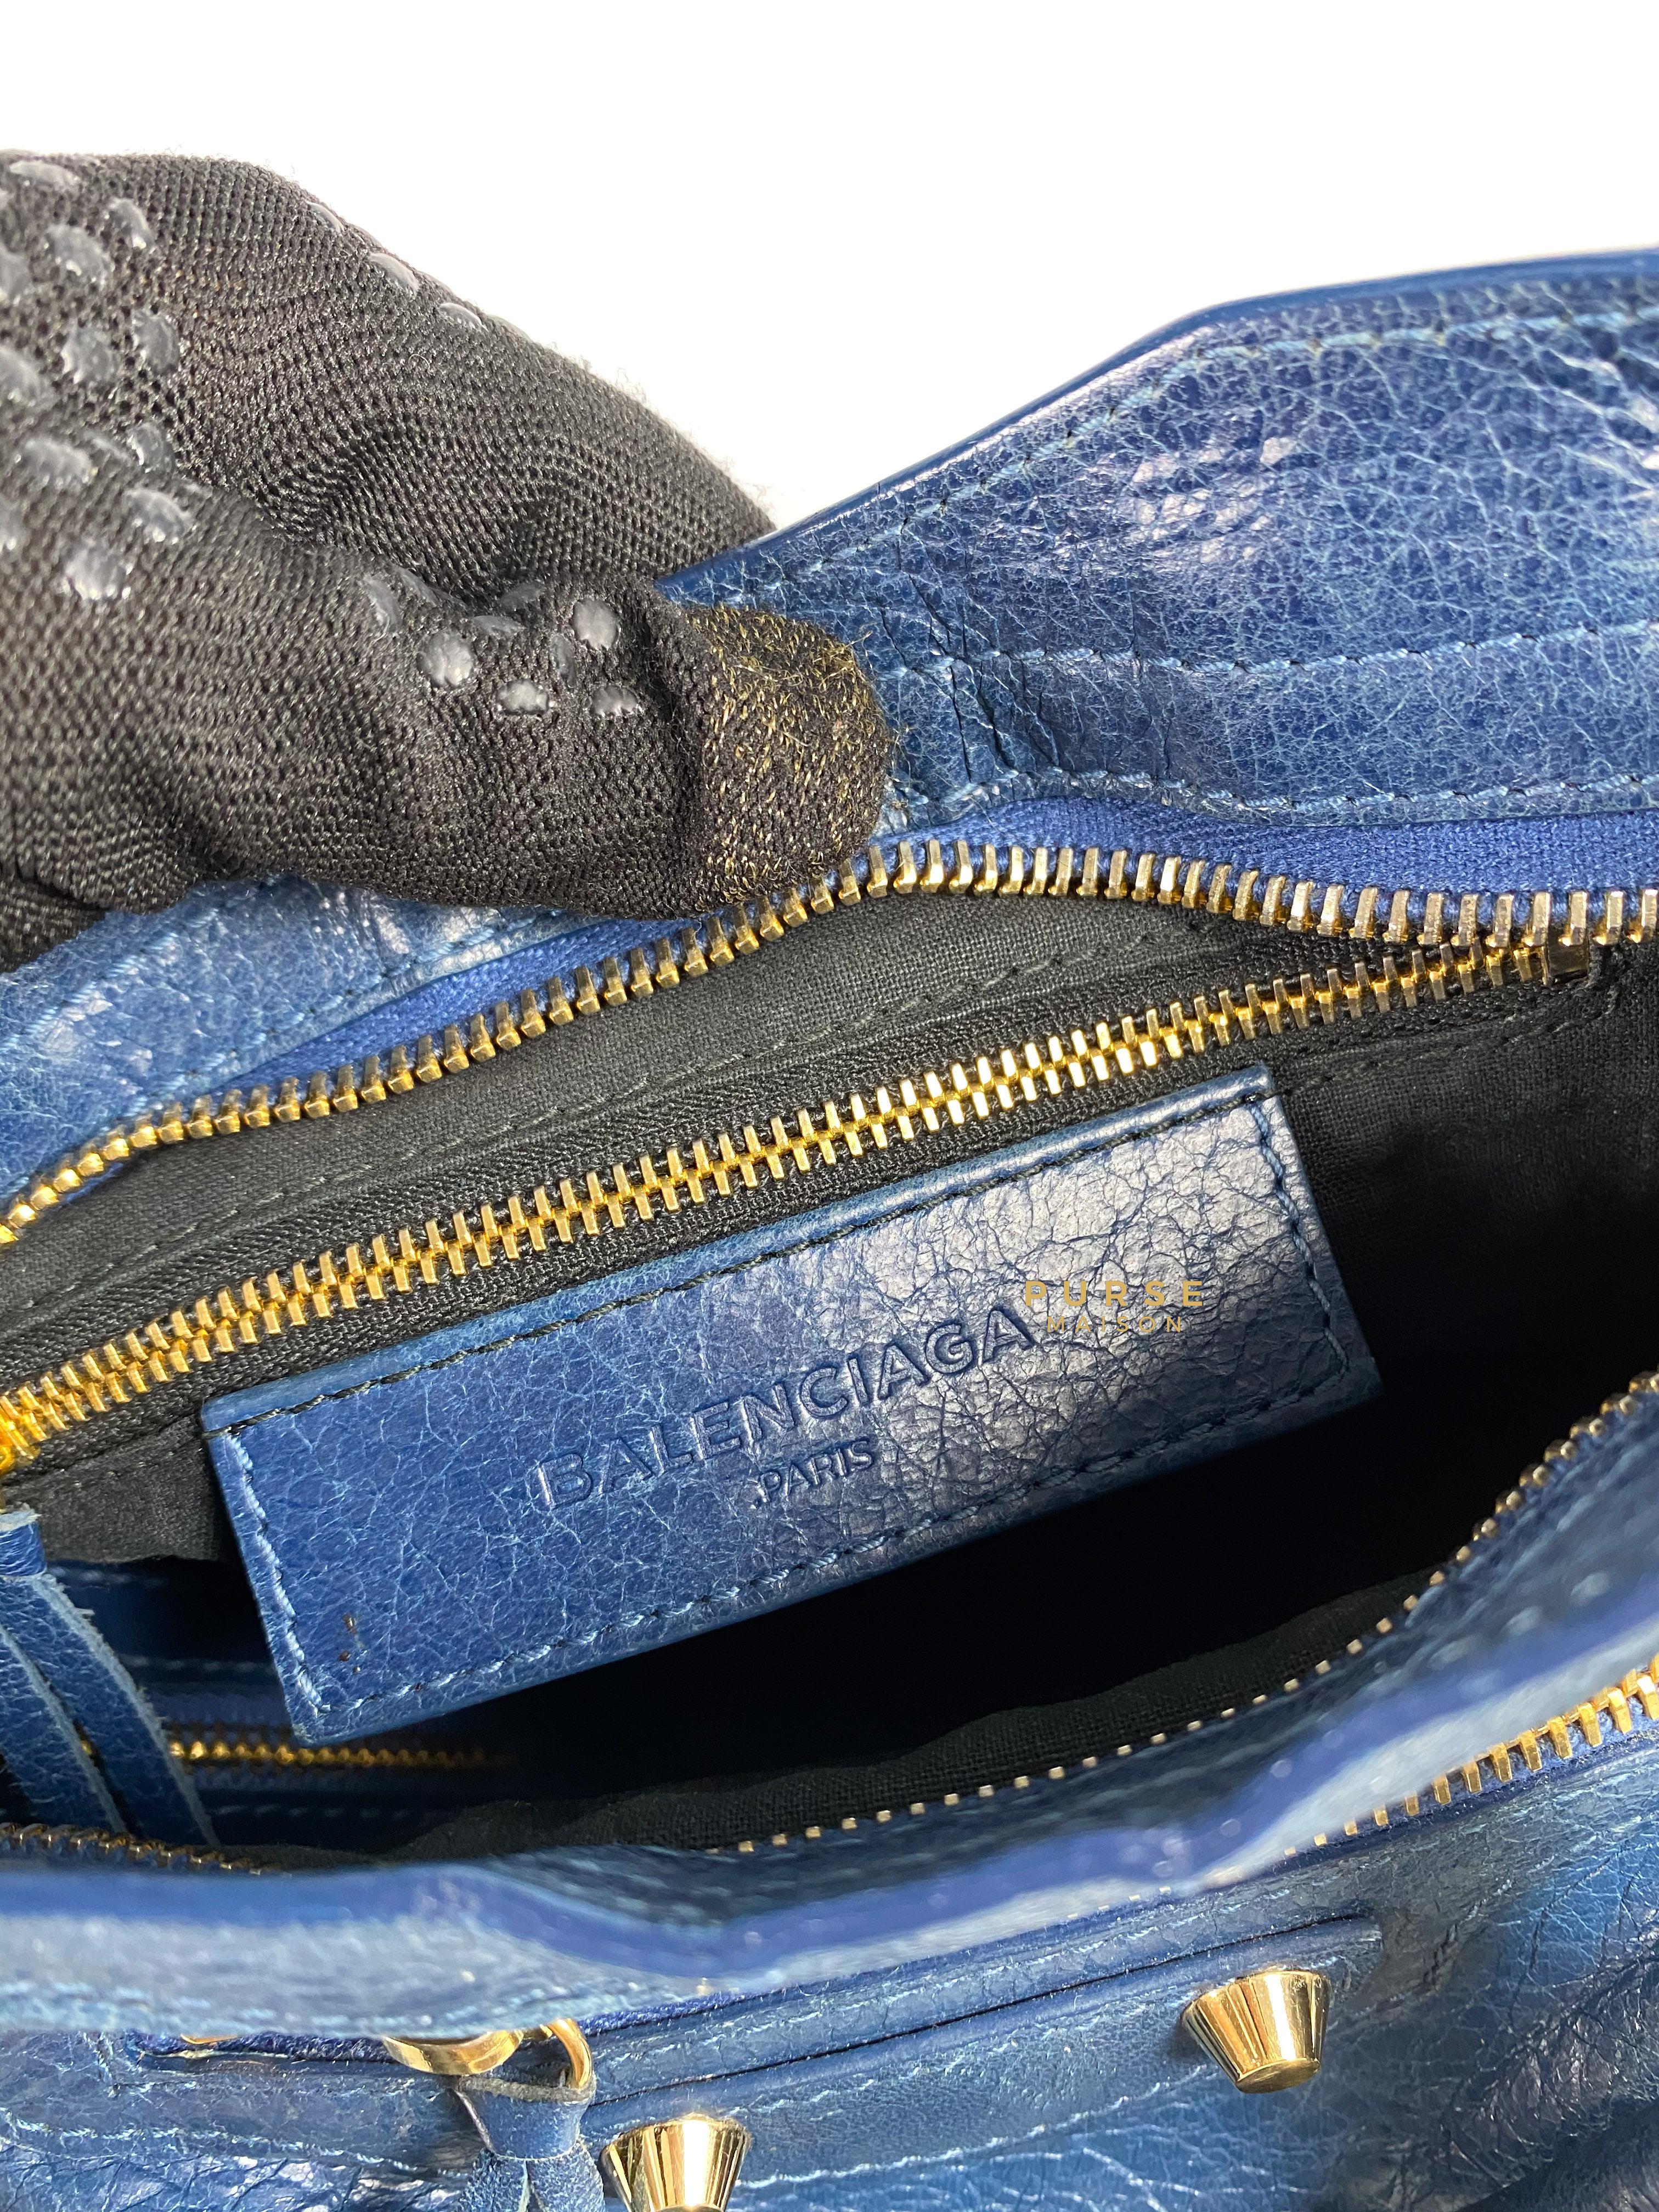 Balenciaga Edge Mini City Blue and Gold Hardware | Purse Maison Luxury Bags Shop